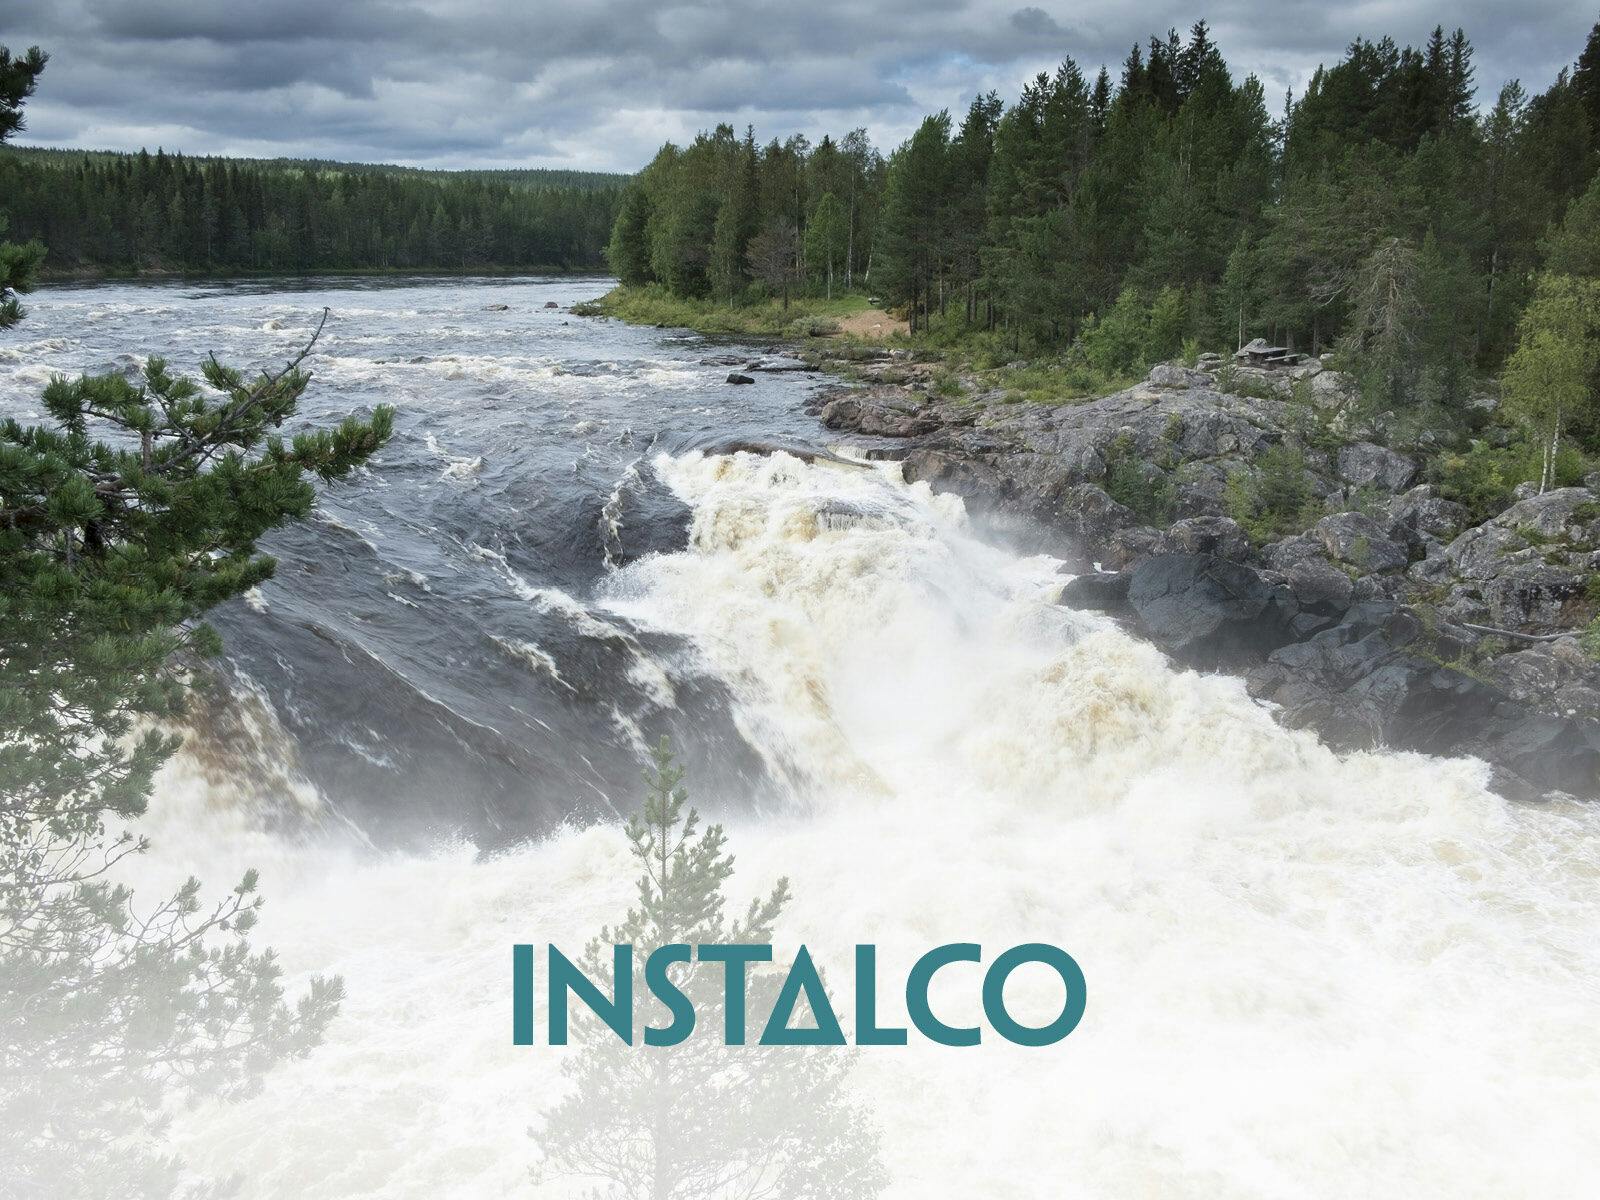 Naturskyddsföreningens företagssamarbete med Instalco. Förebyggande mot läkemedelsrester i vatten.